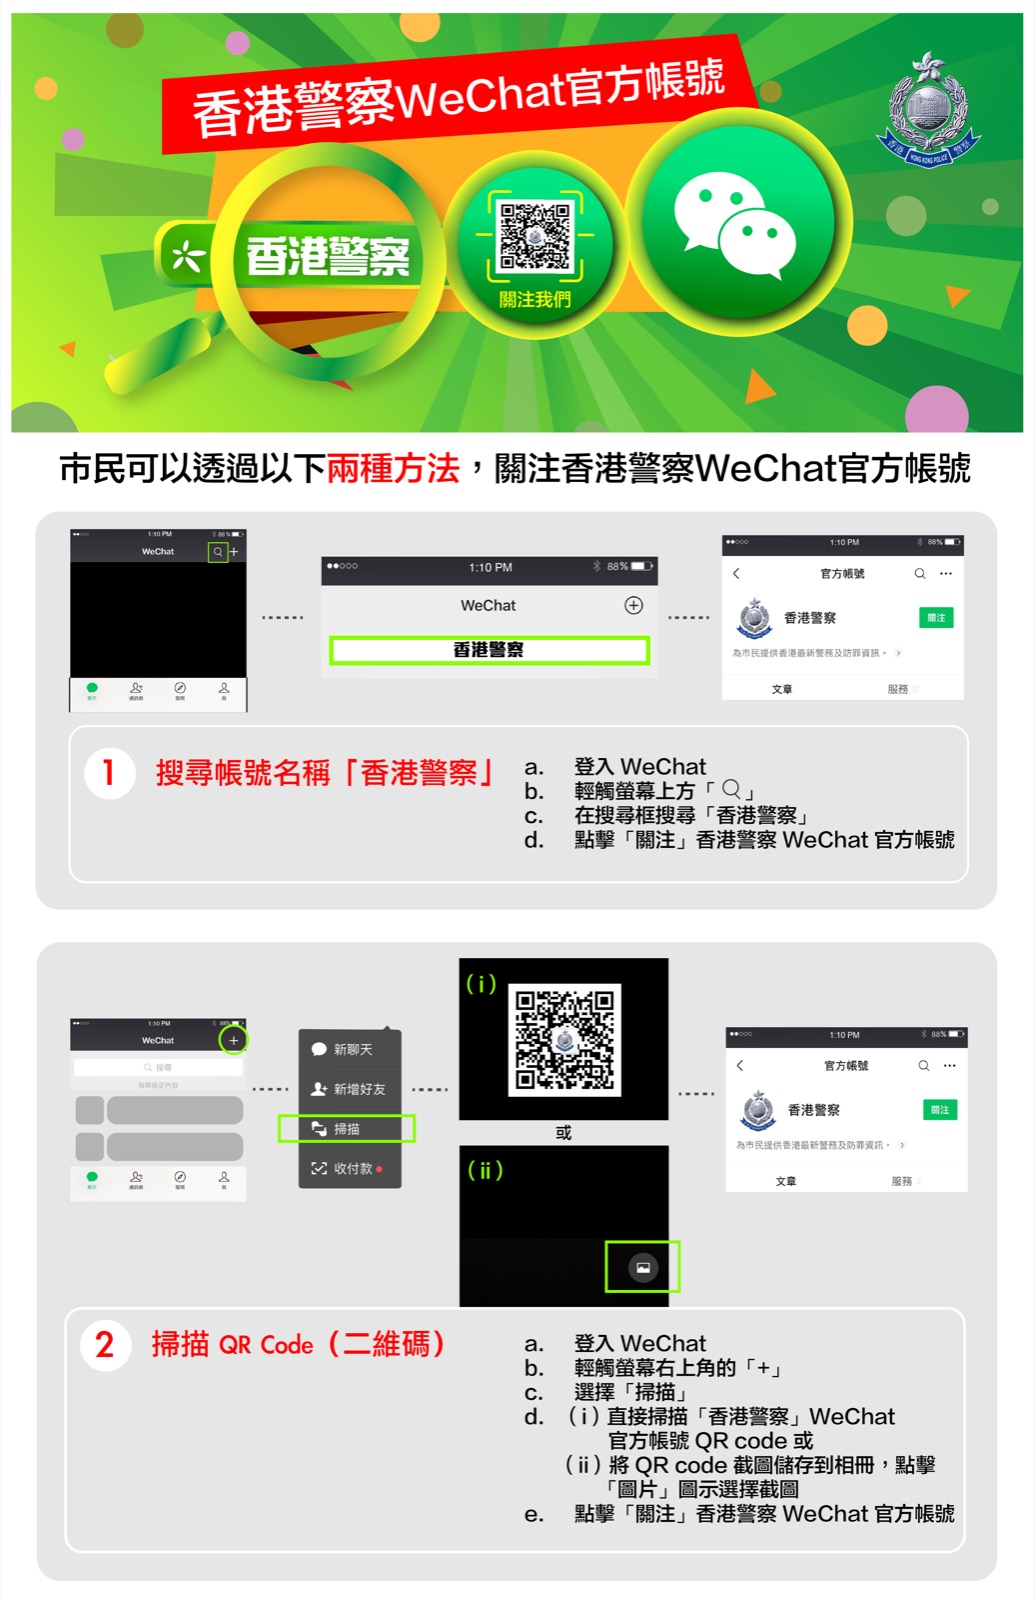 市民可以透過以下兩種方法，關注香港警察WeChat 官方帳號：1. 搜尋WeChat ID「香港警察」- 首先，請開啟並登入 WeChat應用程式，然後輕觸螢幕上方的「放大鏡」，在搜尋框輸入「香港警察」搜尋，最後點擊「關注」，完成關注香港警察WeChat官方帳號。 2. 掃描QR Code（二維碼）
              首先，請開啟並登入 WeChat應用程式，然後輕觸螢幕右上角的「+」圖示，再選擇「掃描」。市民可以直接掃描香港警察WeChat官方帳號的QR Code或者先將QR Code截圖儲存到相冊，再點擊畫面右下角的「圖片」圖示選擇剛才的截圖以供辨識。最後點擊「關注」，完成關注香港警察WeChat官方帳號。